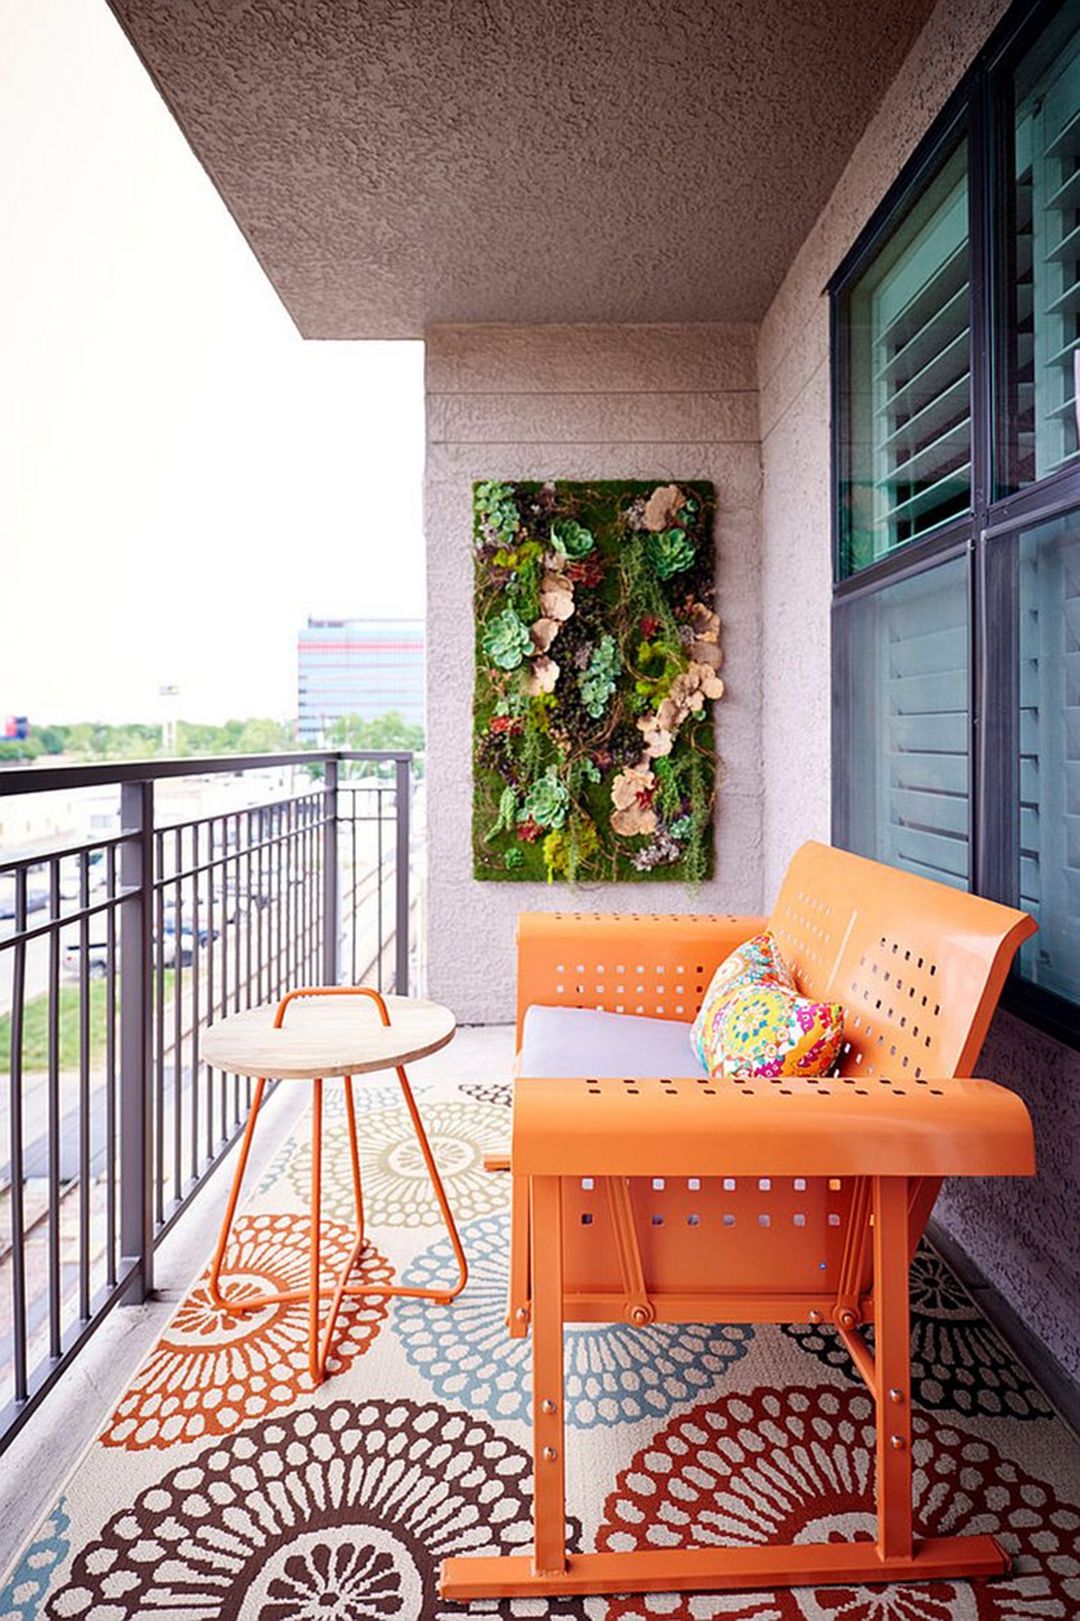 Ban công sở hữu những gì ấn tượng nhất: Một khu vườn thu nhỏ trên tường, một tấm thảm hoa văn to bản lôi cuốn và một chiếc ghế màu cam neon hút mắt vô cùng.